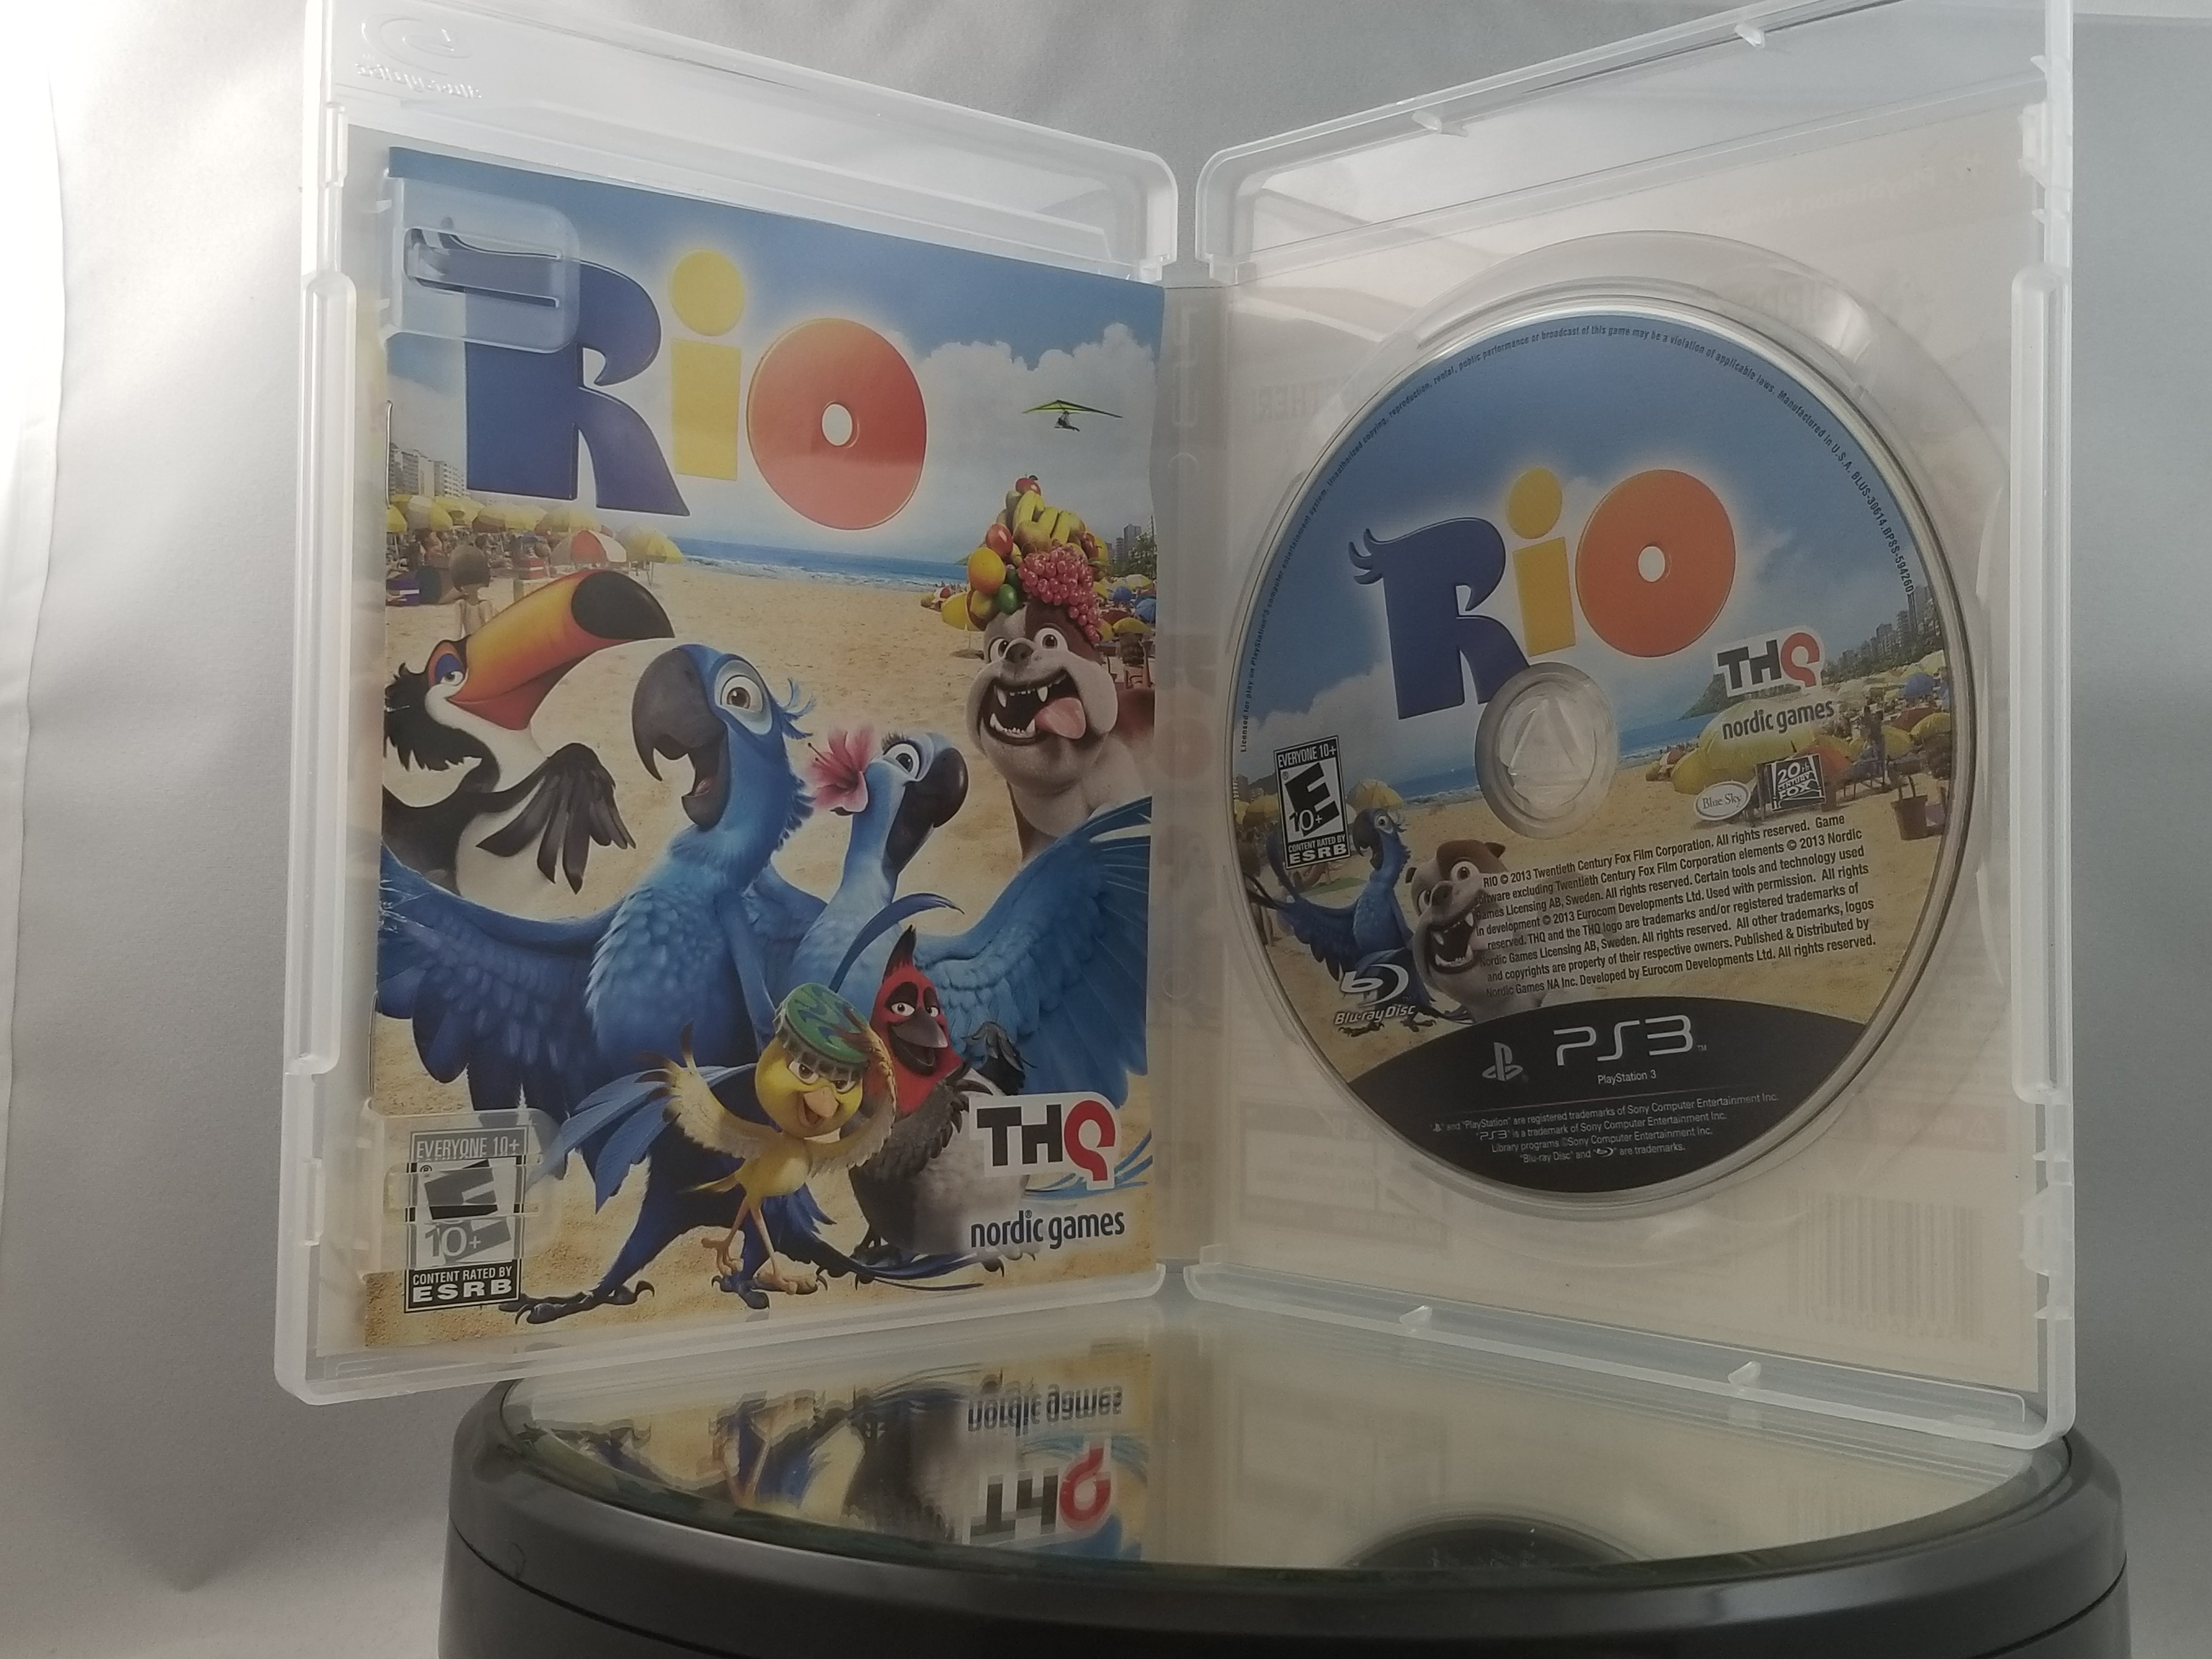 Jogo Rio PlayStation 3 THQ com o Melhor Preço é no Zoom